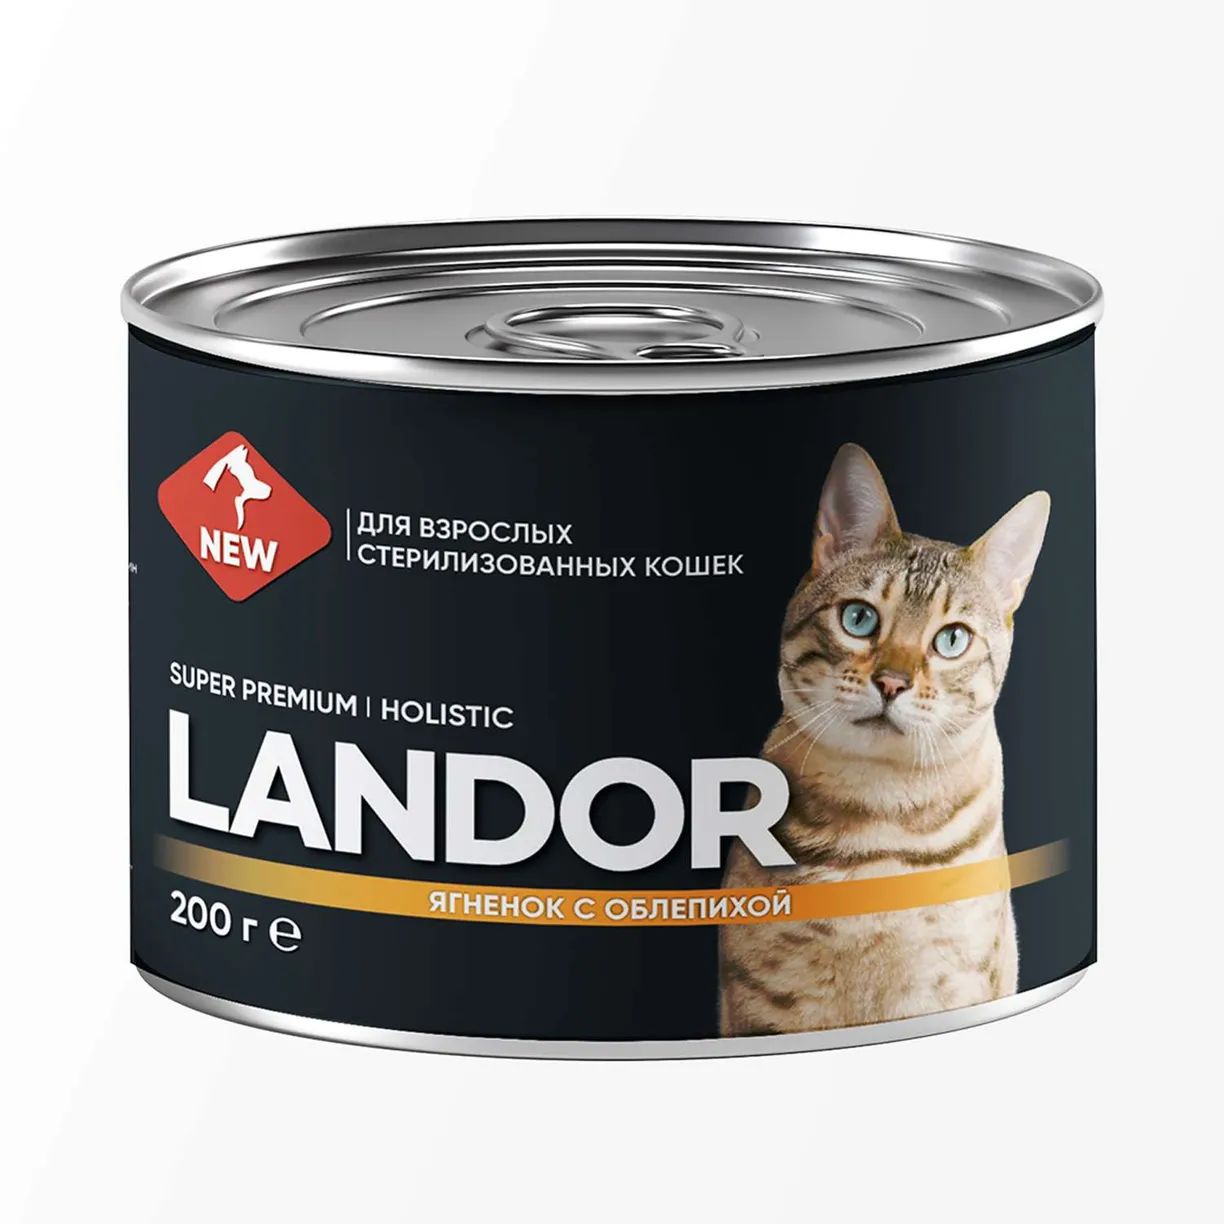 Влажный корм для кошек LANDOR, для стерилизованных, с ягненком и облепихой, 6 шт по 200г